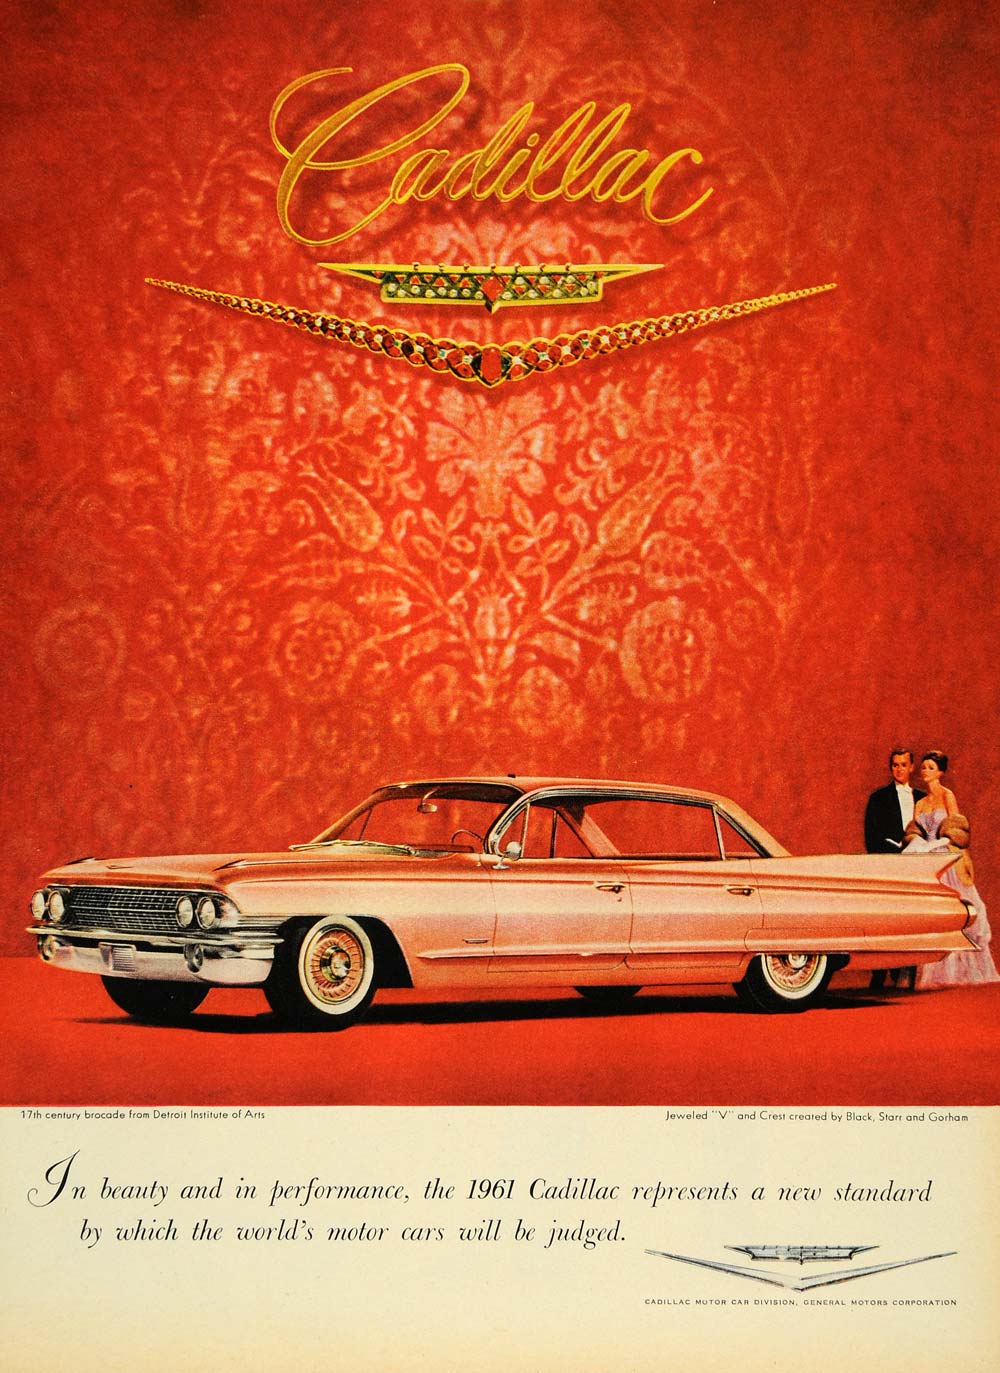 1960 Ad Vintage '61 Pink Cadillac Detroit Art Institute - ORIGINAL TM3